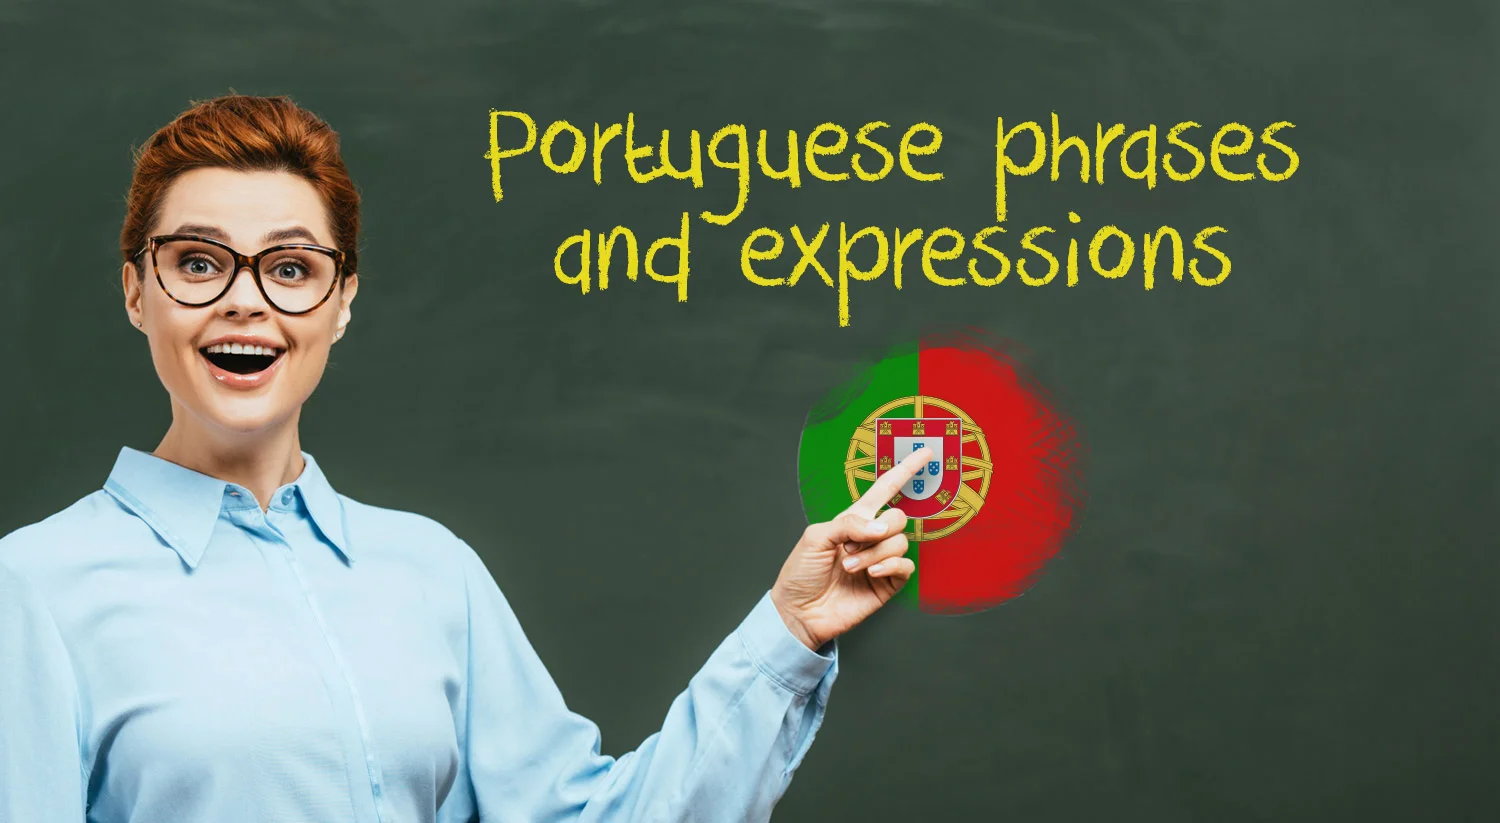 False Friends English Portuguese - A Dica do Dia - Rio & Learn